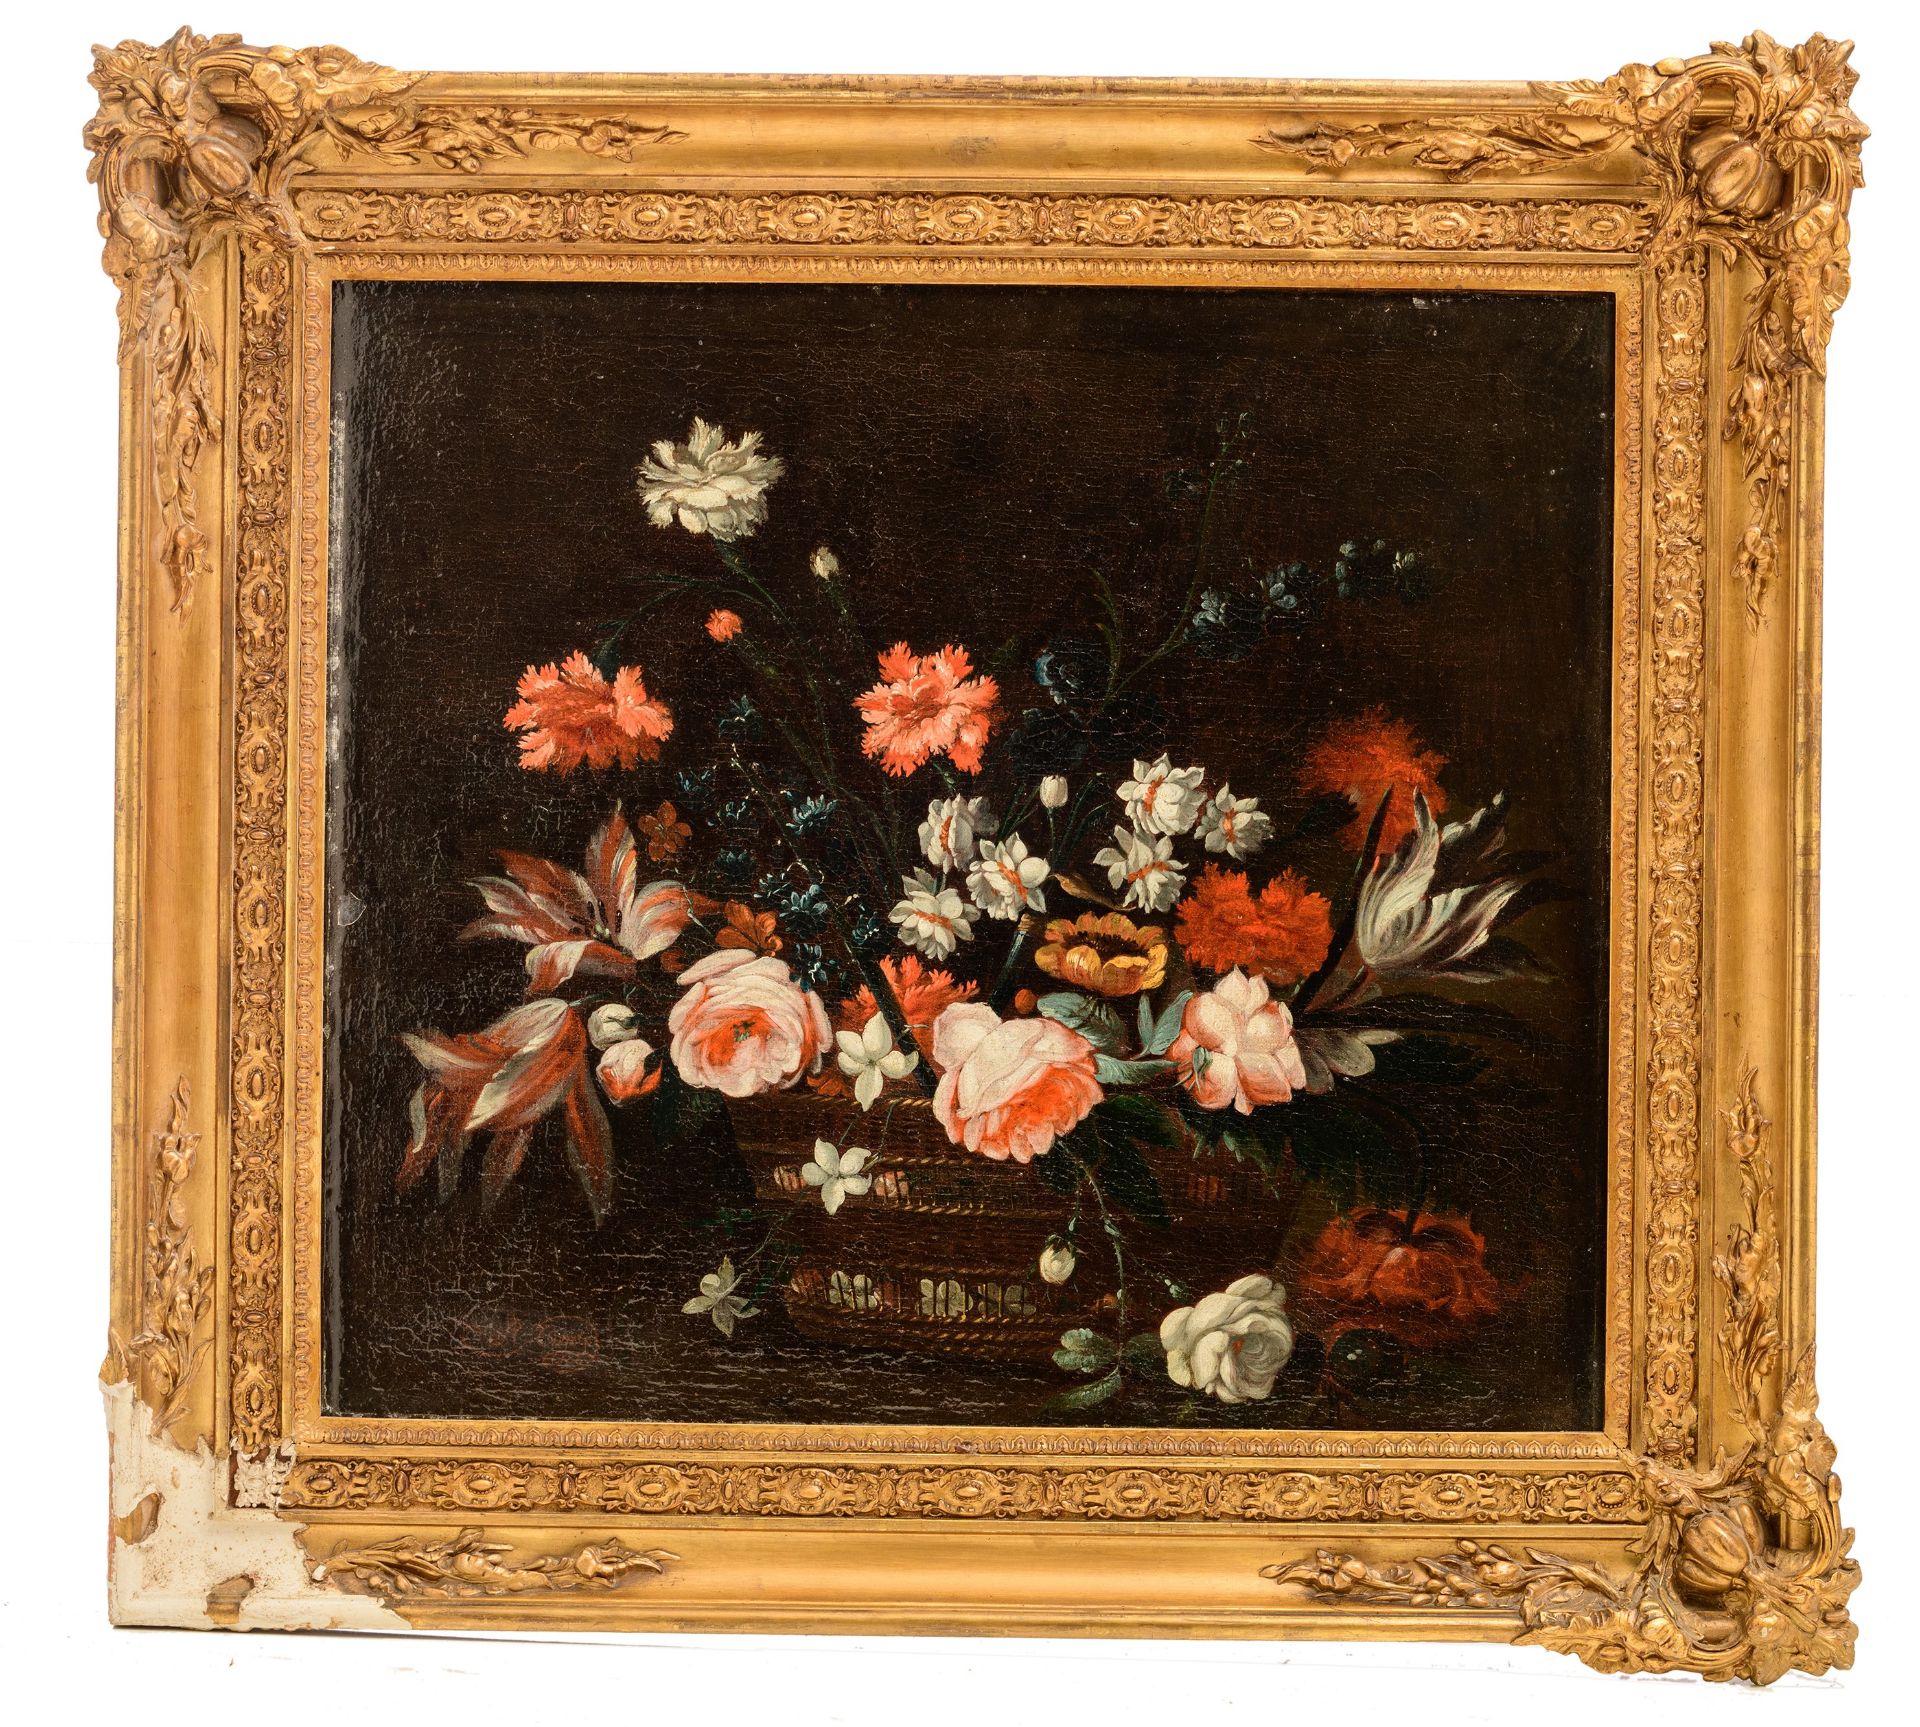 Adriaen Coorte (c. 1660-1723), flower still life, 1700, oil on canvas, 60 x 66 cm - Bild 2 aus 6